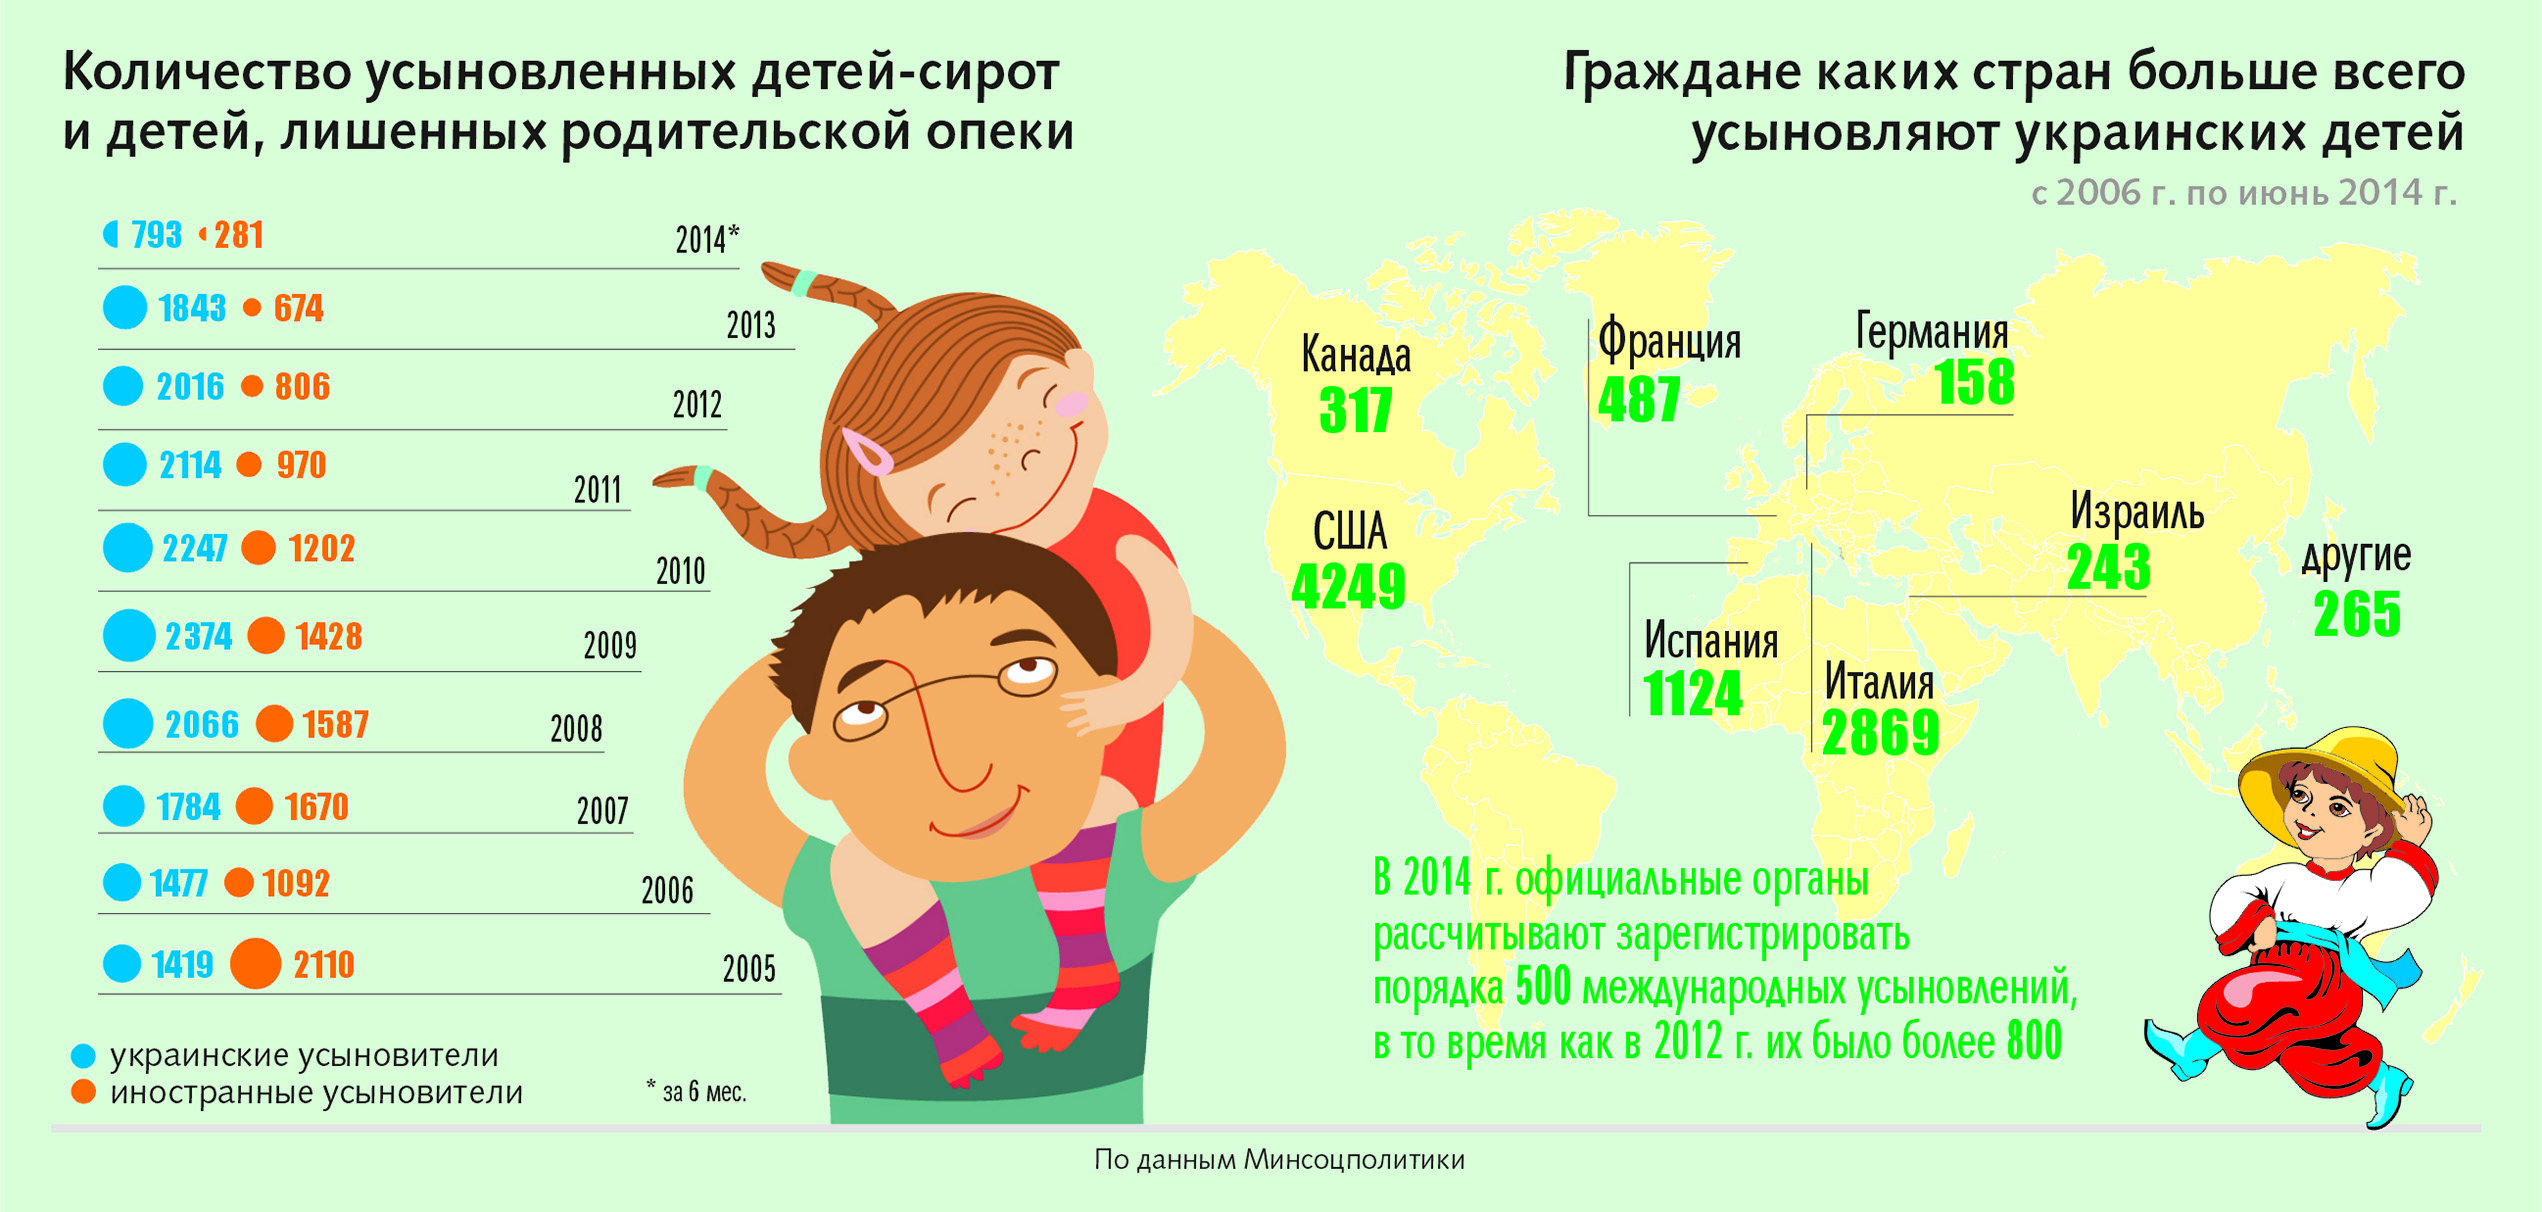 Сколько семей в мире. Численность детей сирот. Статистика детей сирот по странам. Количество детей в стране. Статистика детей сирот в России.